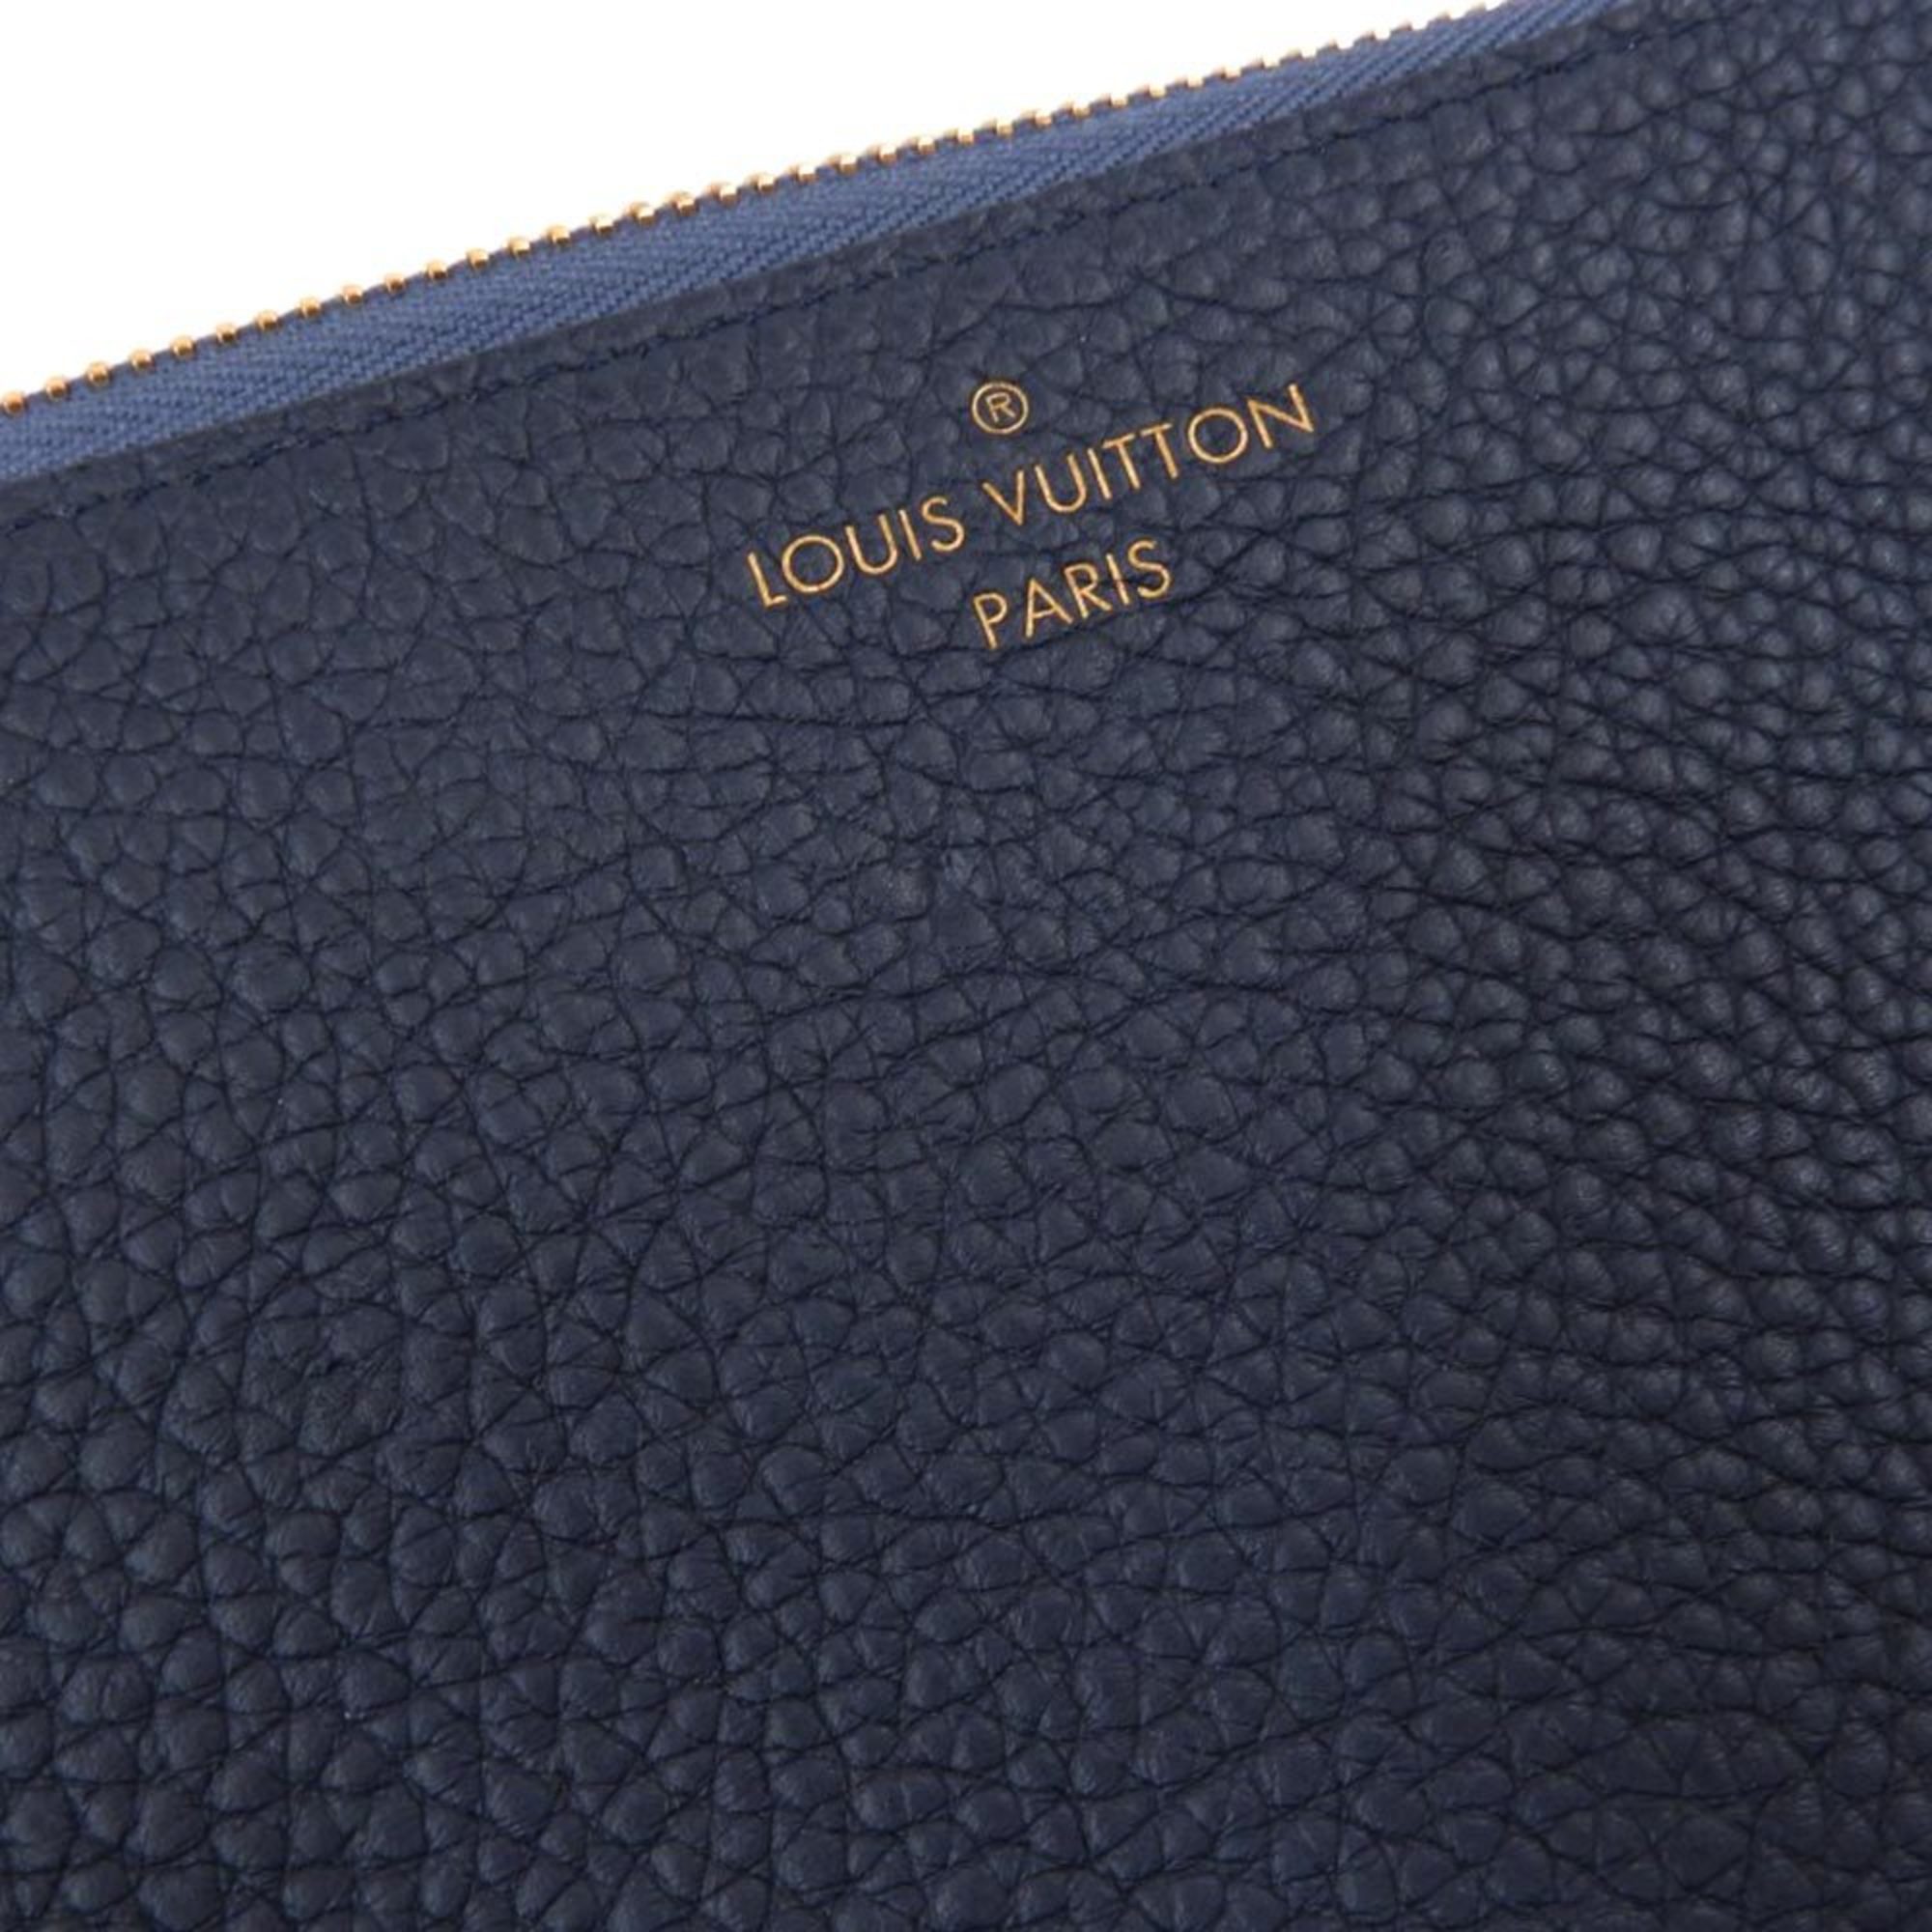 Louis Vuitton LOUIS VUITTON Portefeuille Comet L-shaped zipper long wallet Blue Marine Navy M68582